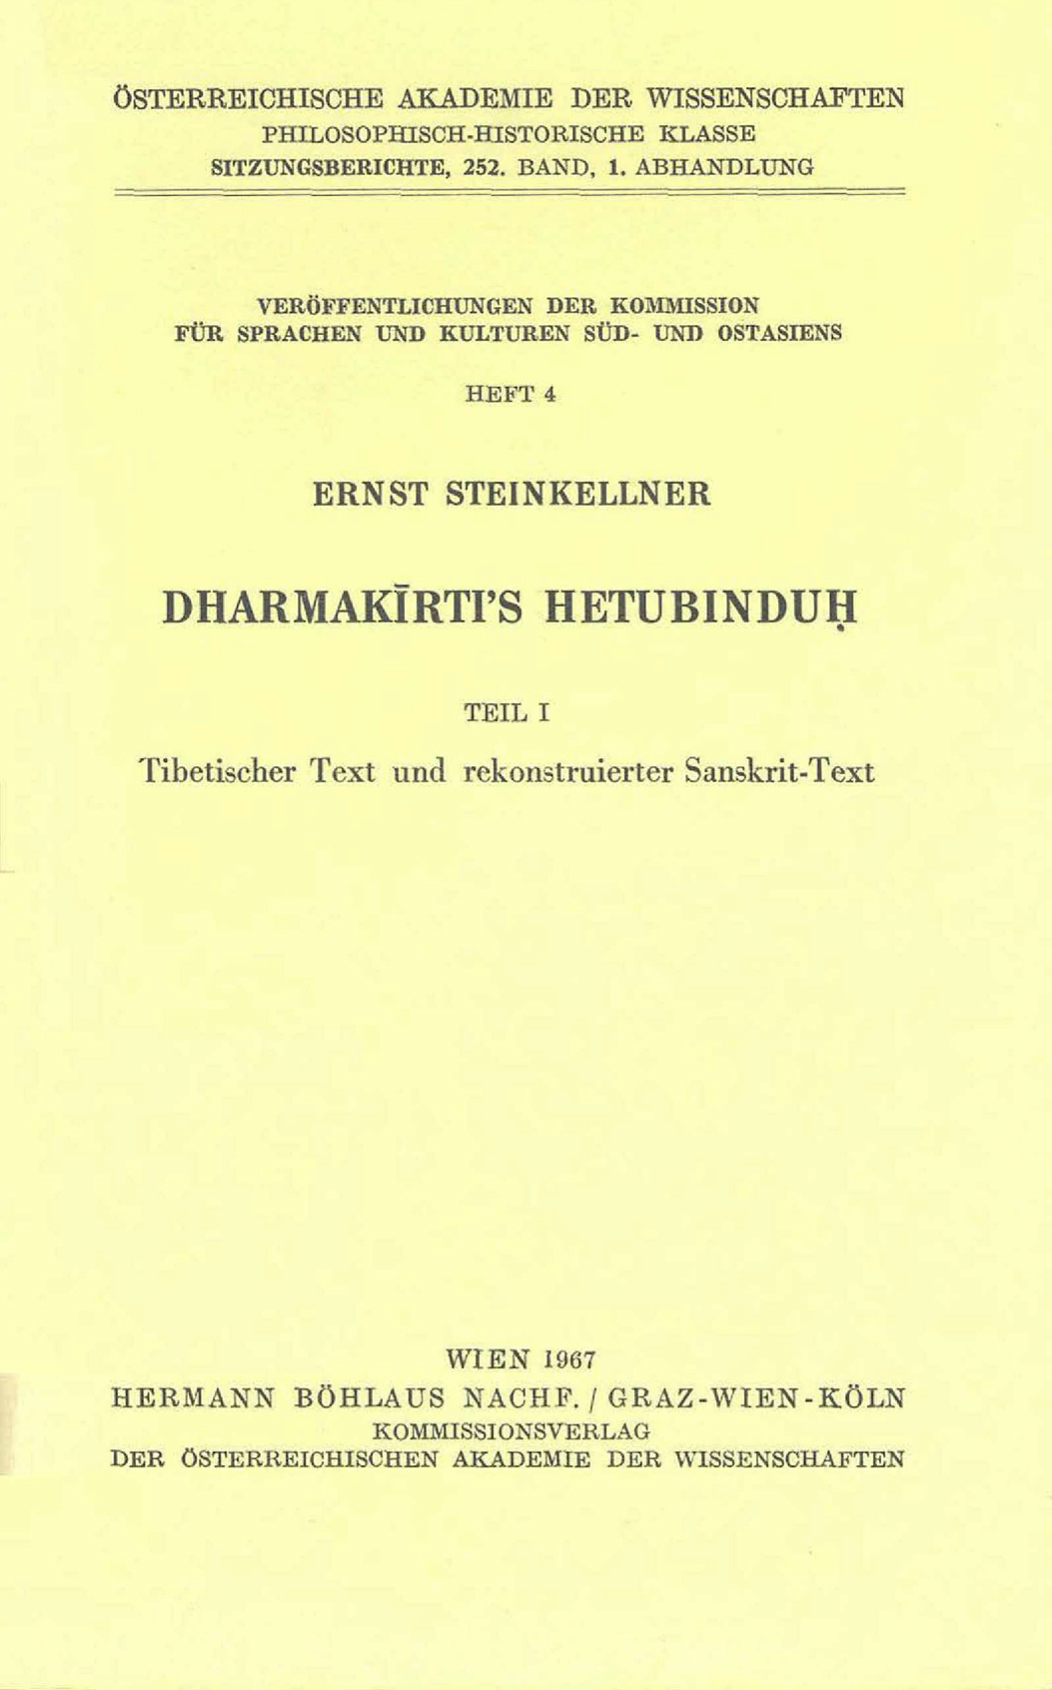 Dharmakīrti's Hetubinduḥ Vol. 1-front.jpg